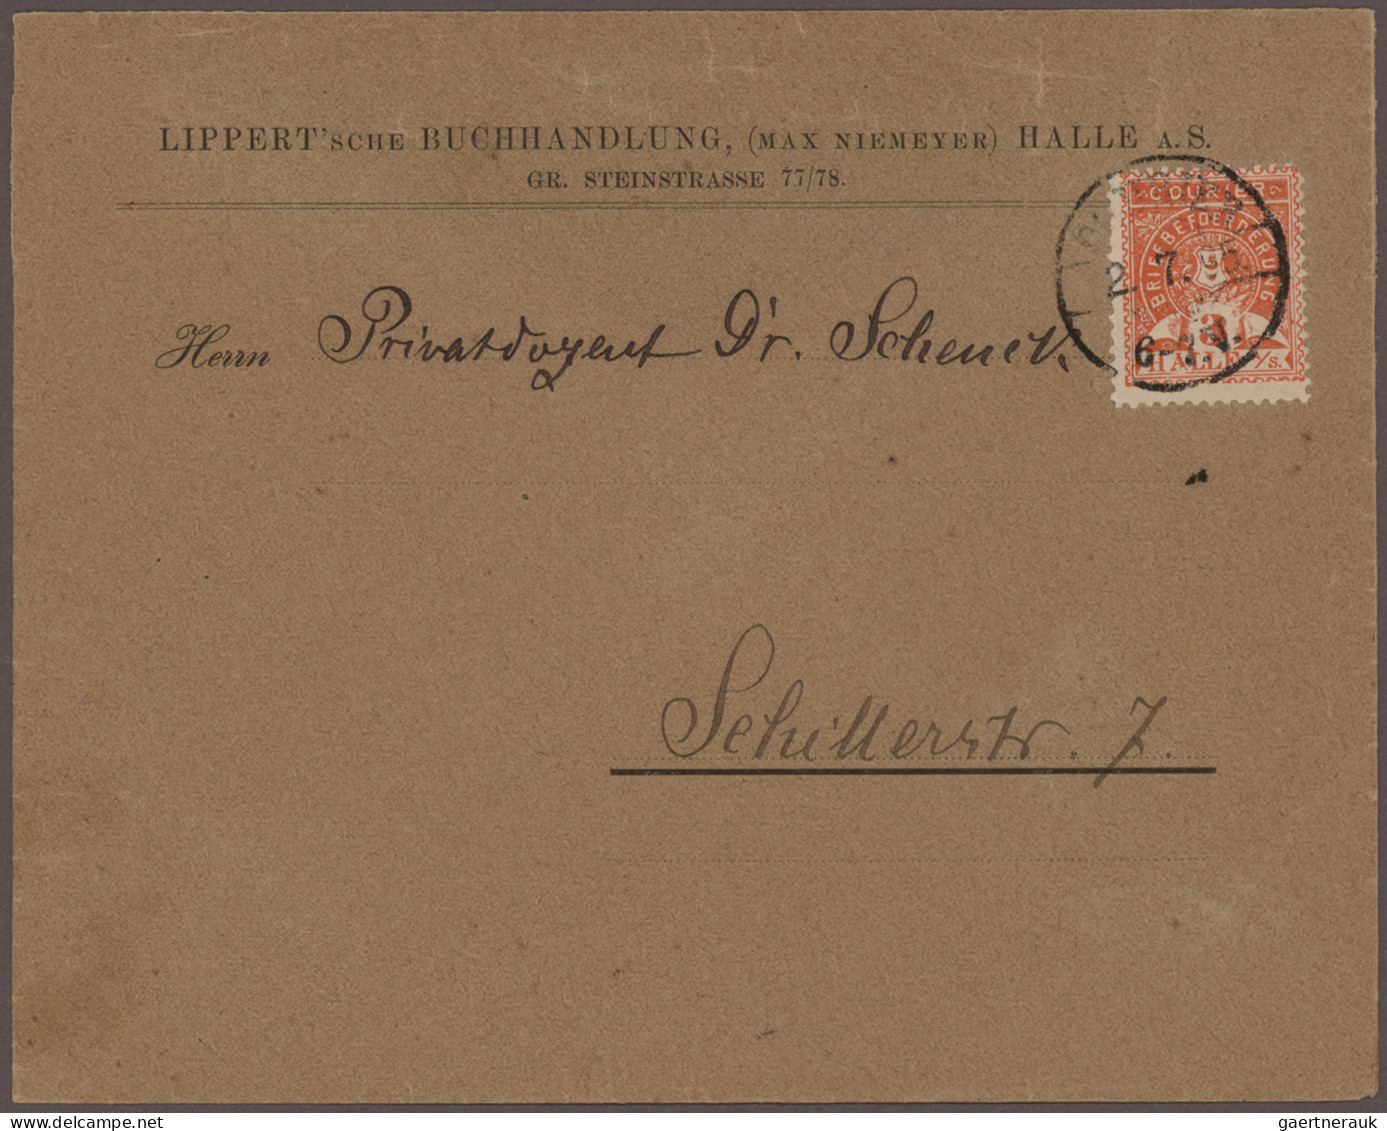 Deutsches Reich - Privatpost (Stadtpost): 1886/1900, Posten mit ca. 140 Briefen